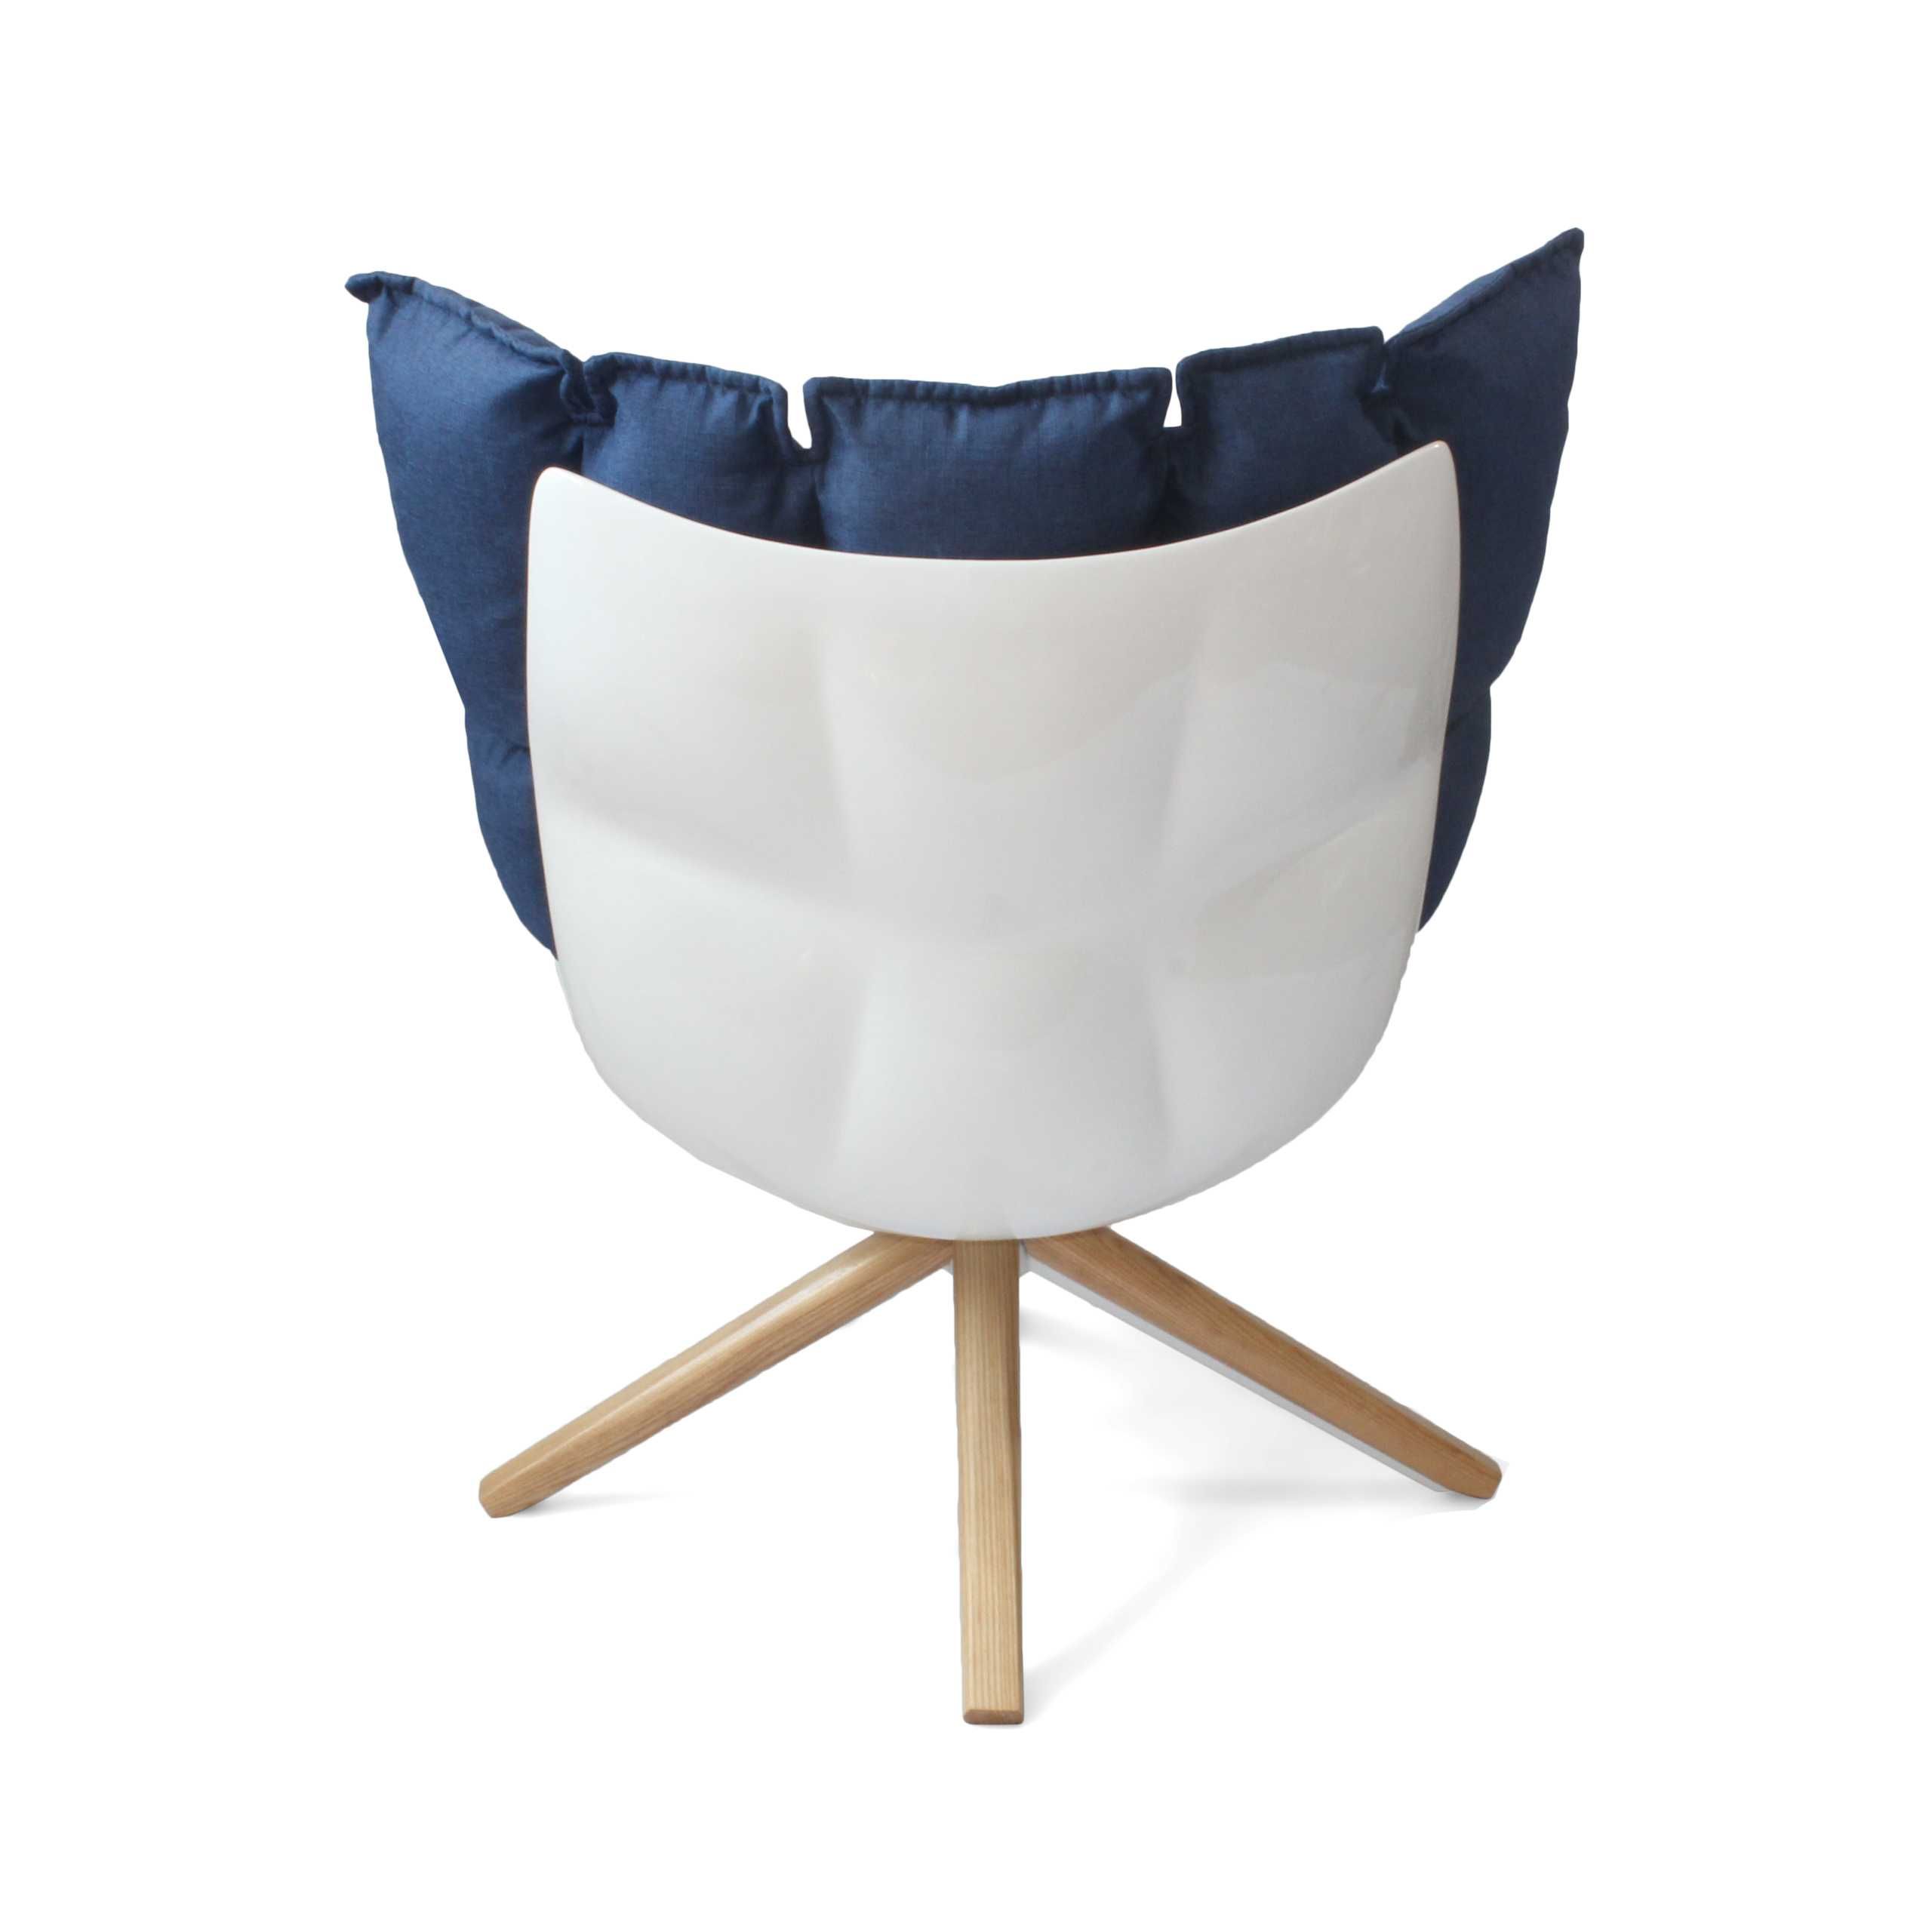 Fotel Designerski Obracany bardzo wygodny Pillow Chair nowy